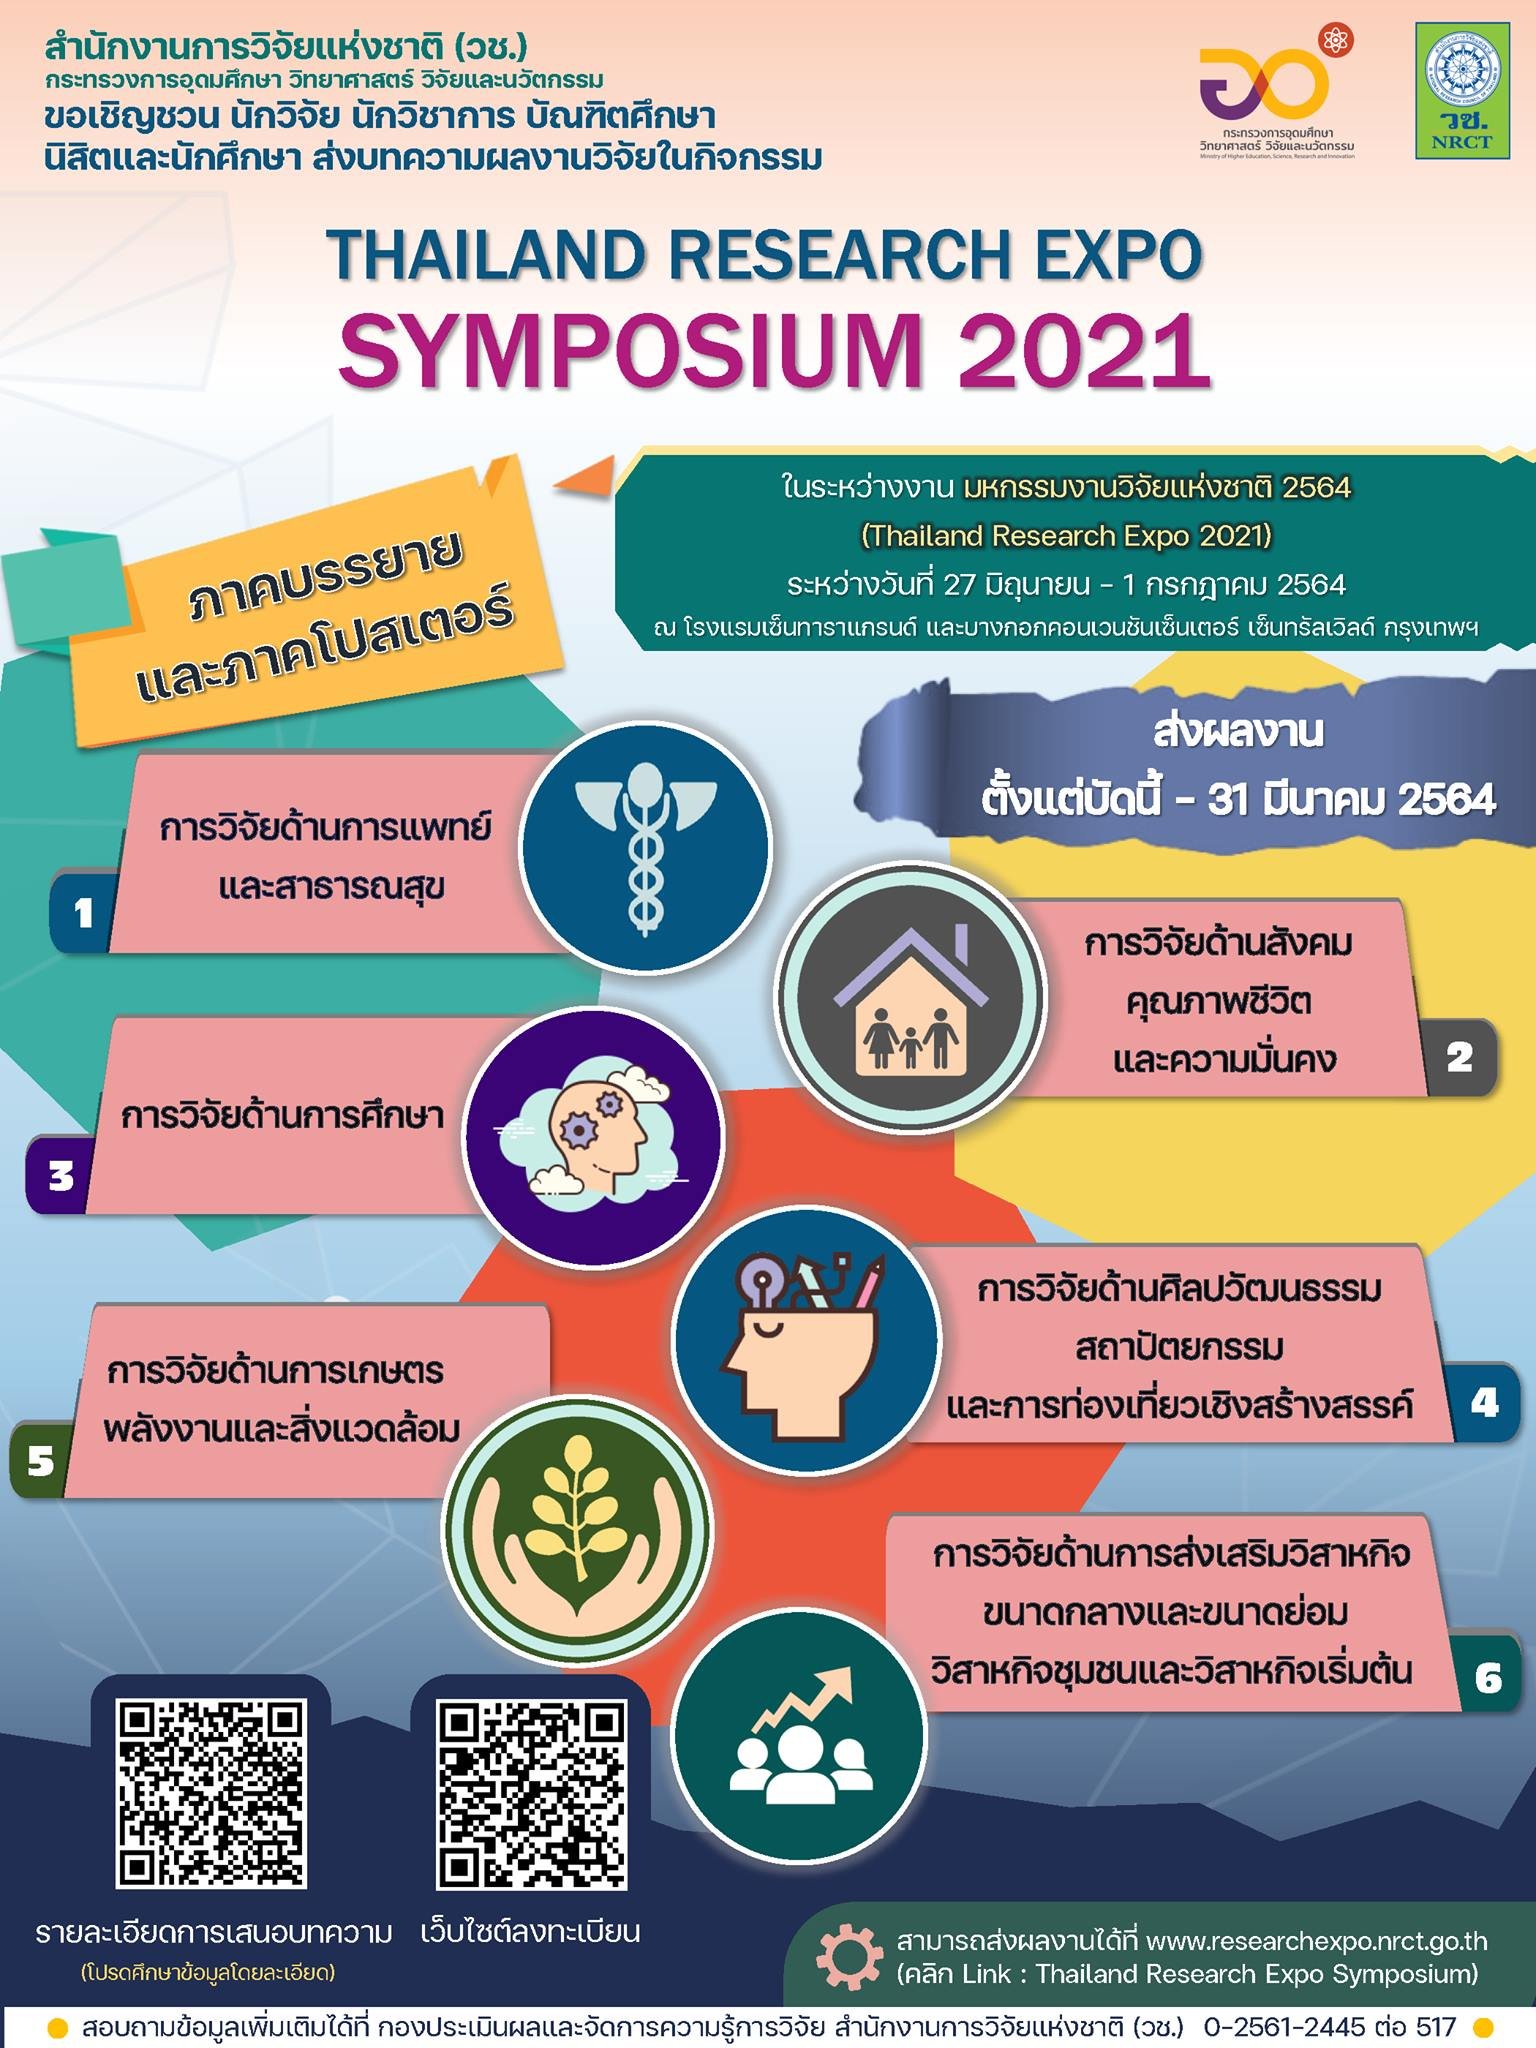  ขอเชิญชวนผู้ที่สนใจร่วมส่งบทความผลงานวิจัยในกิจกรรม Thailand Research Expo Symposium 2021